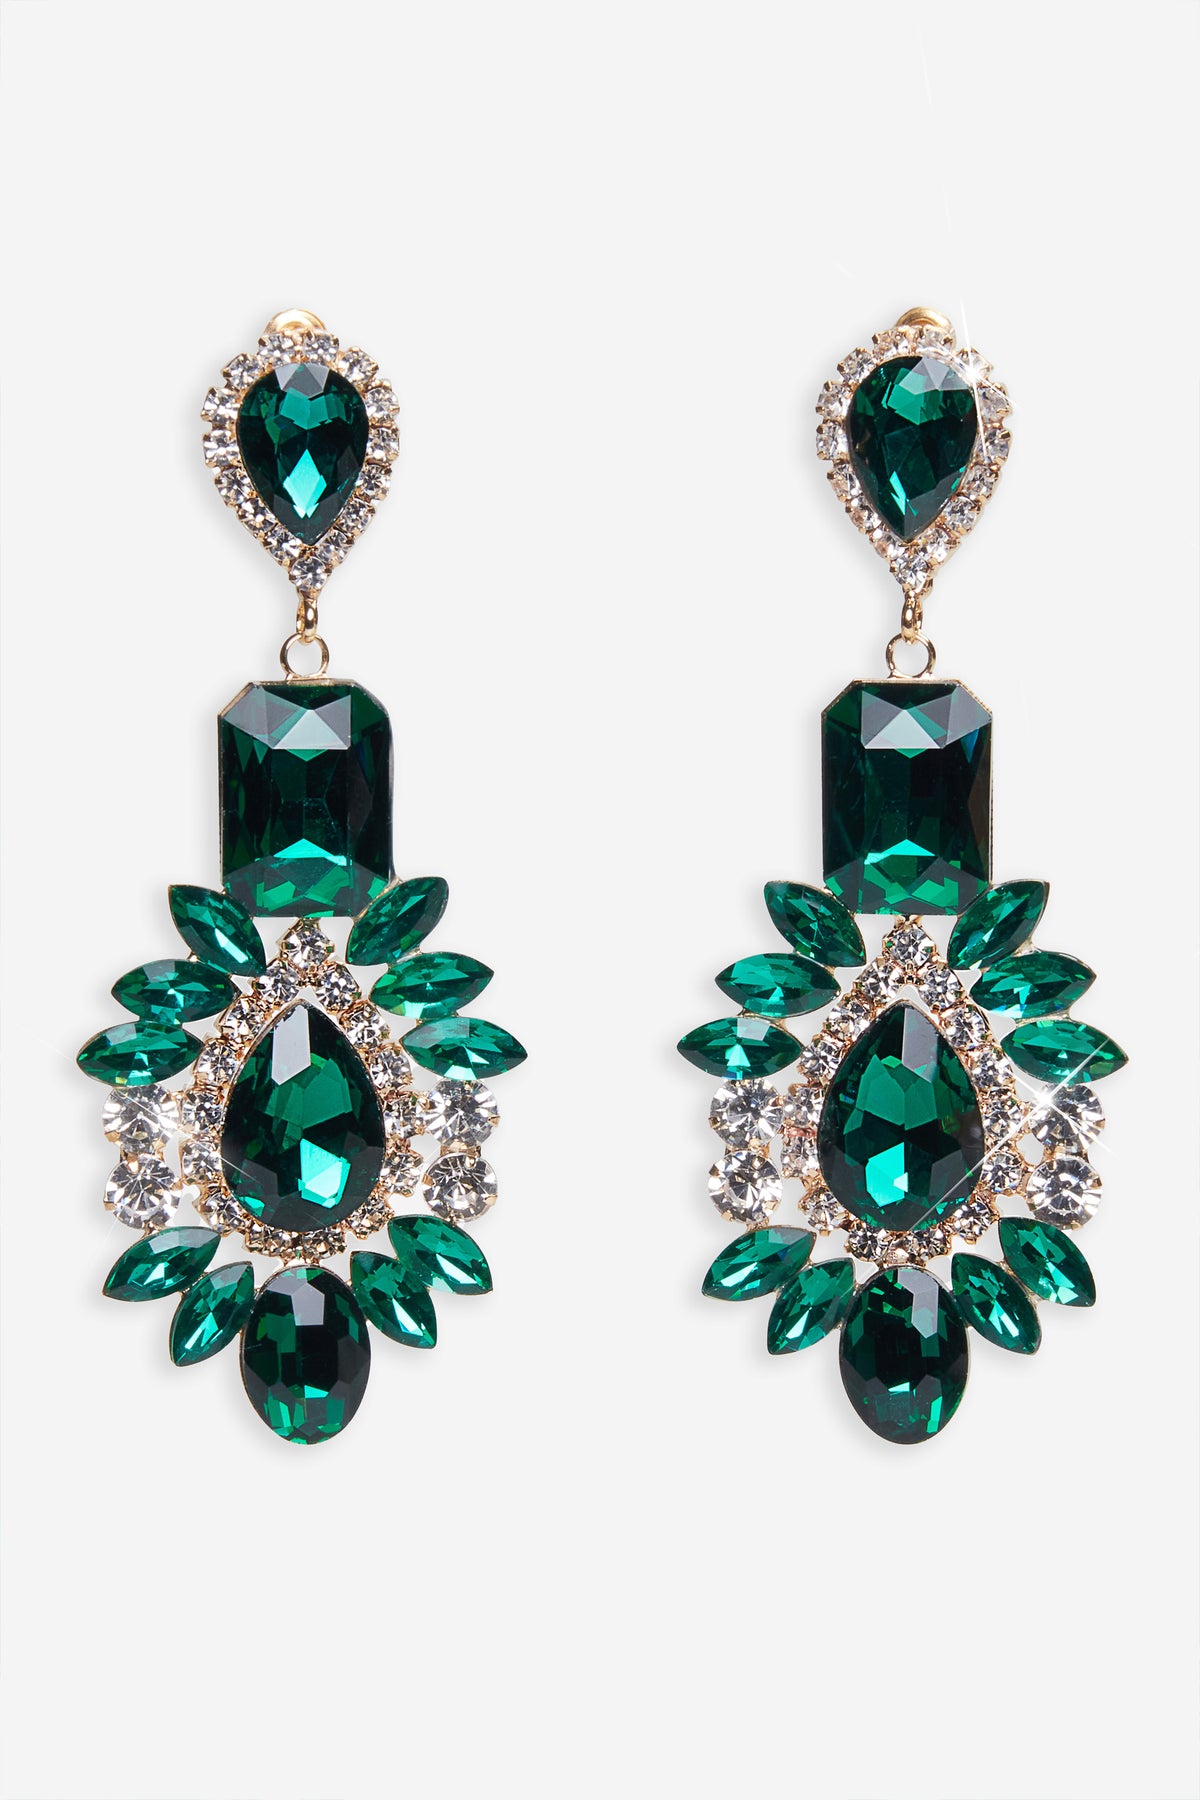 Emerald Green Huggie Hoop Gold Earrings Glass Tear Drop - Etsy UK | Wedding  jewellery gifts, Irish earrings, Green earrings